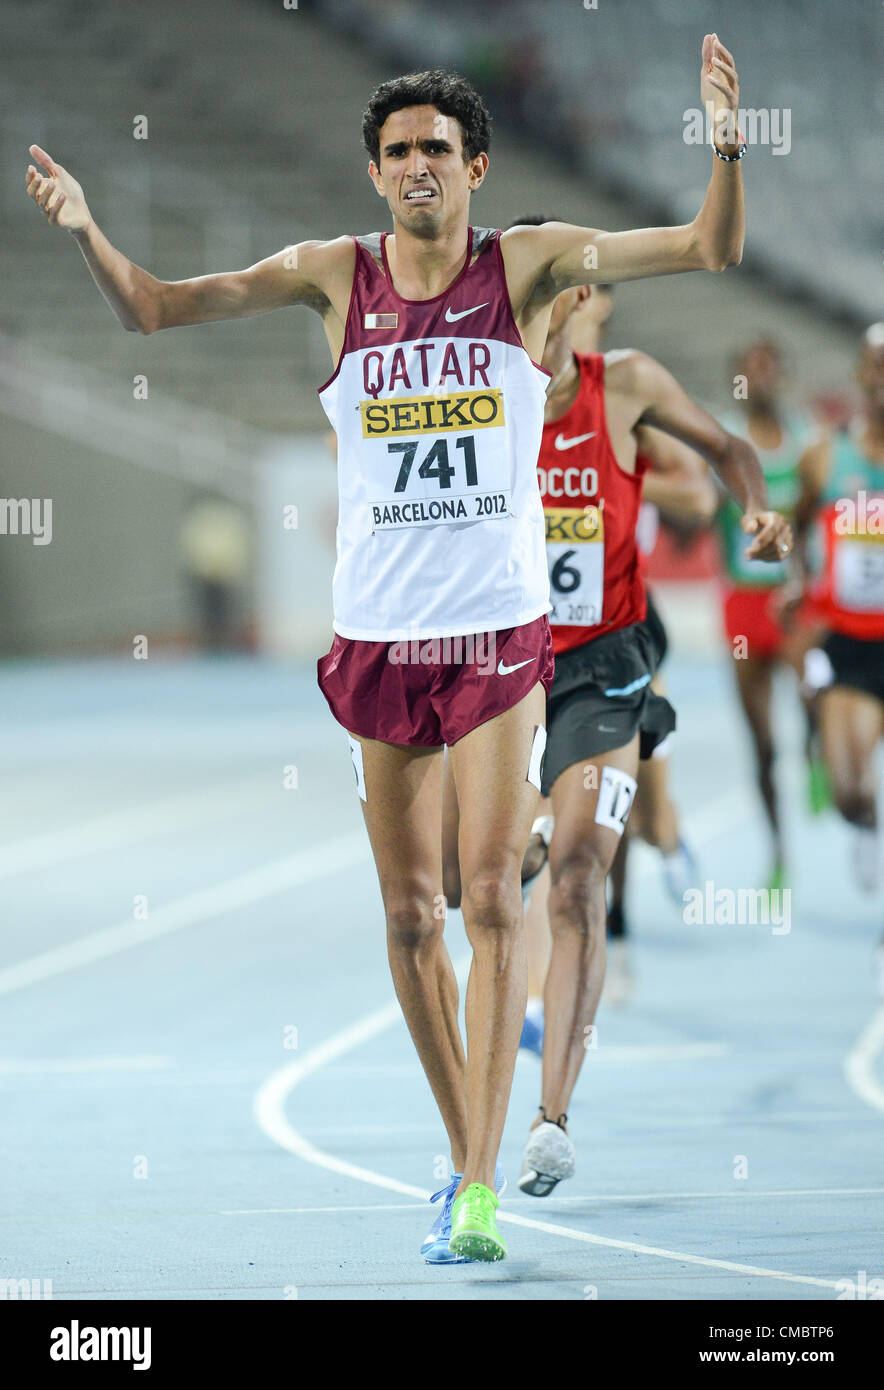 BARCELONA, Spanien: Donnerstag, 12. Juli 2012, Hamza Driouch (741) von Katar gewinnt die Mens 1500 m gold Medaille während der Nachmittagssitzung von Tag 3 von der IAAF World Junior Championships am Estadi Olimpic de Montjuïc. Foto von Roger Sedres/ImageSA Stockfoto